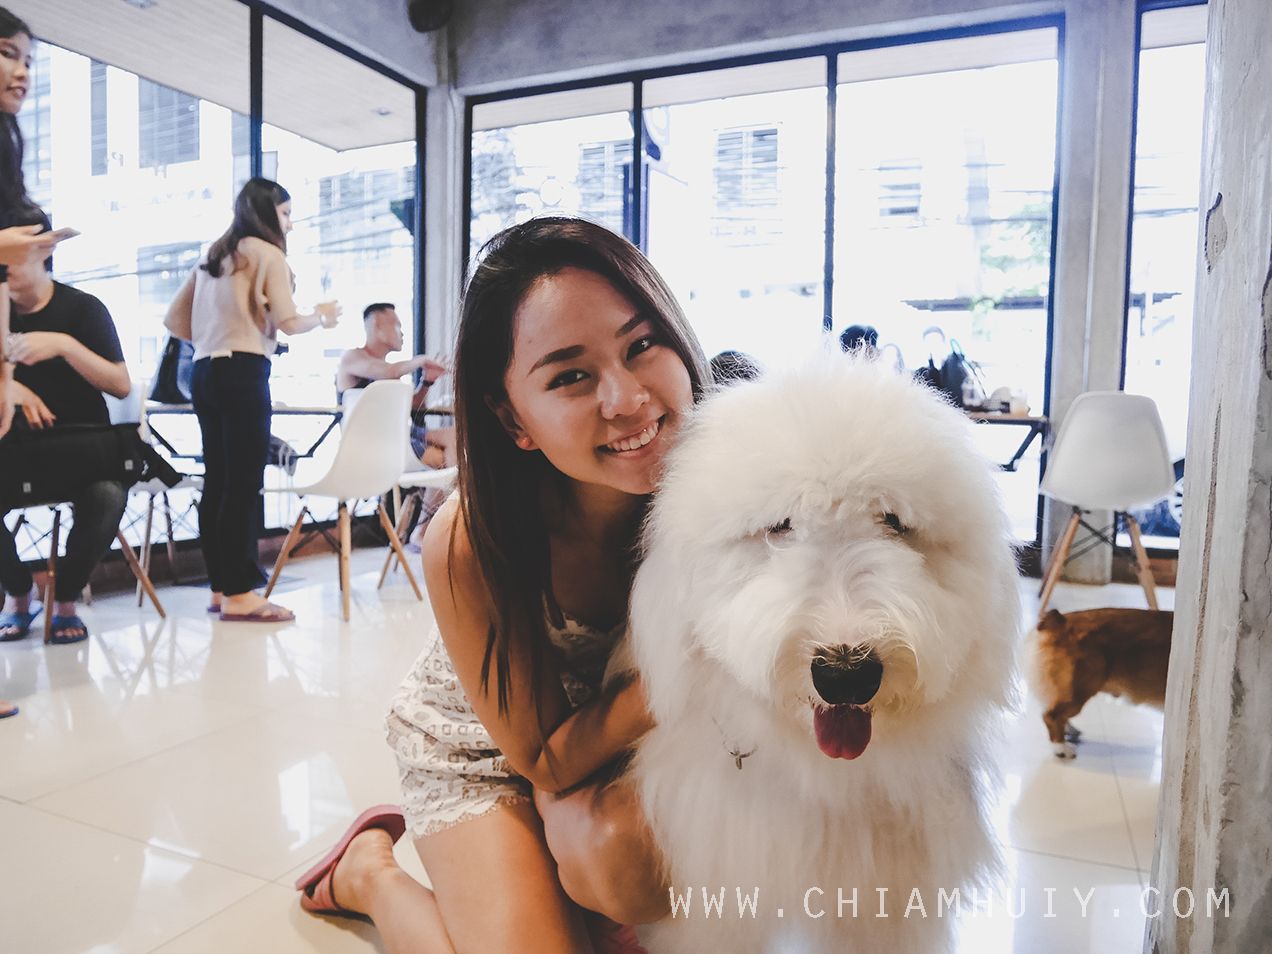  photo hope for paw cafe bangkok.jpg